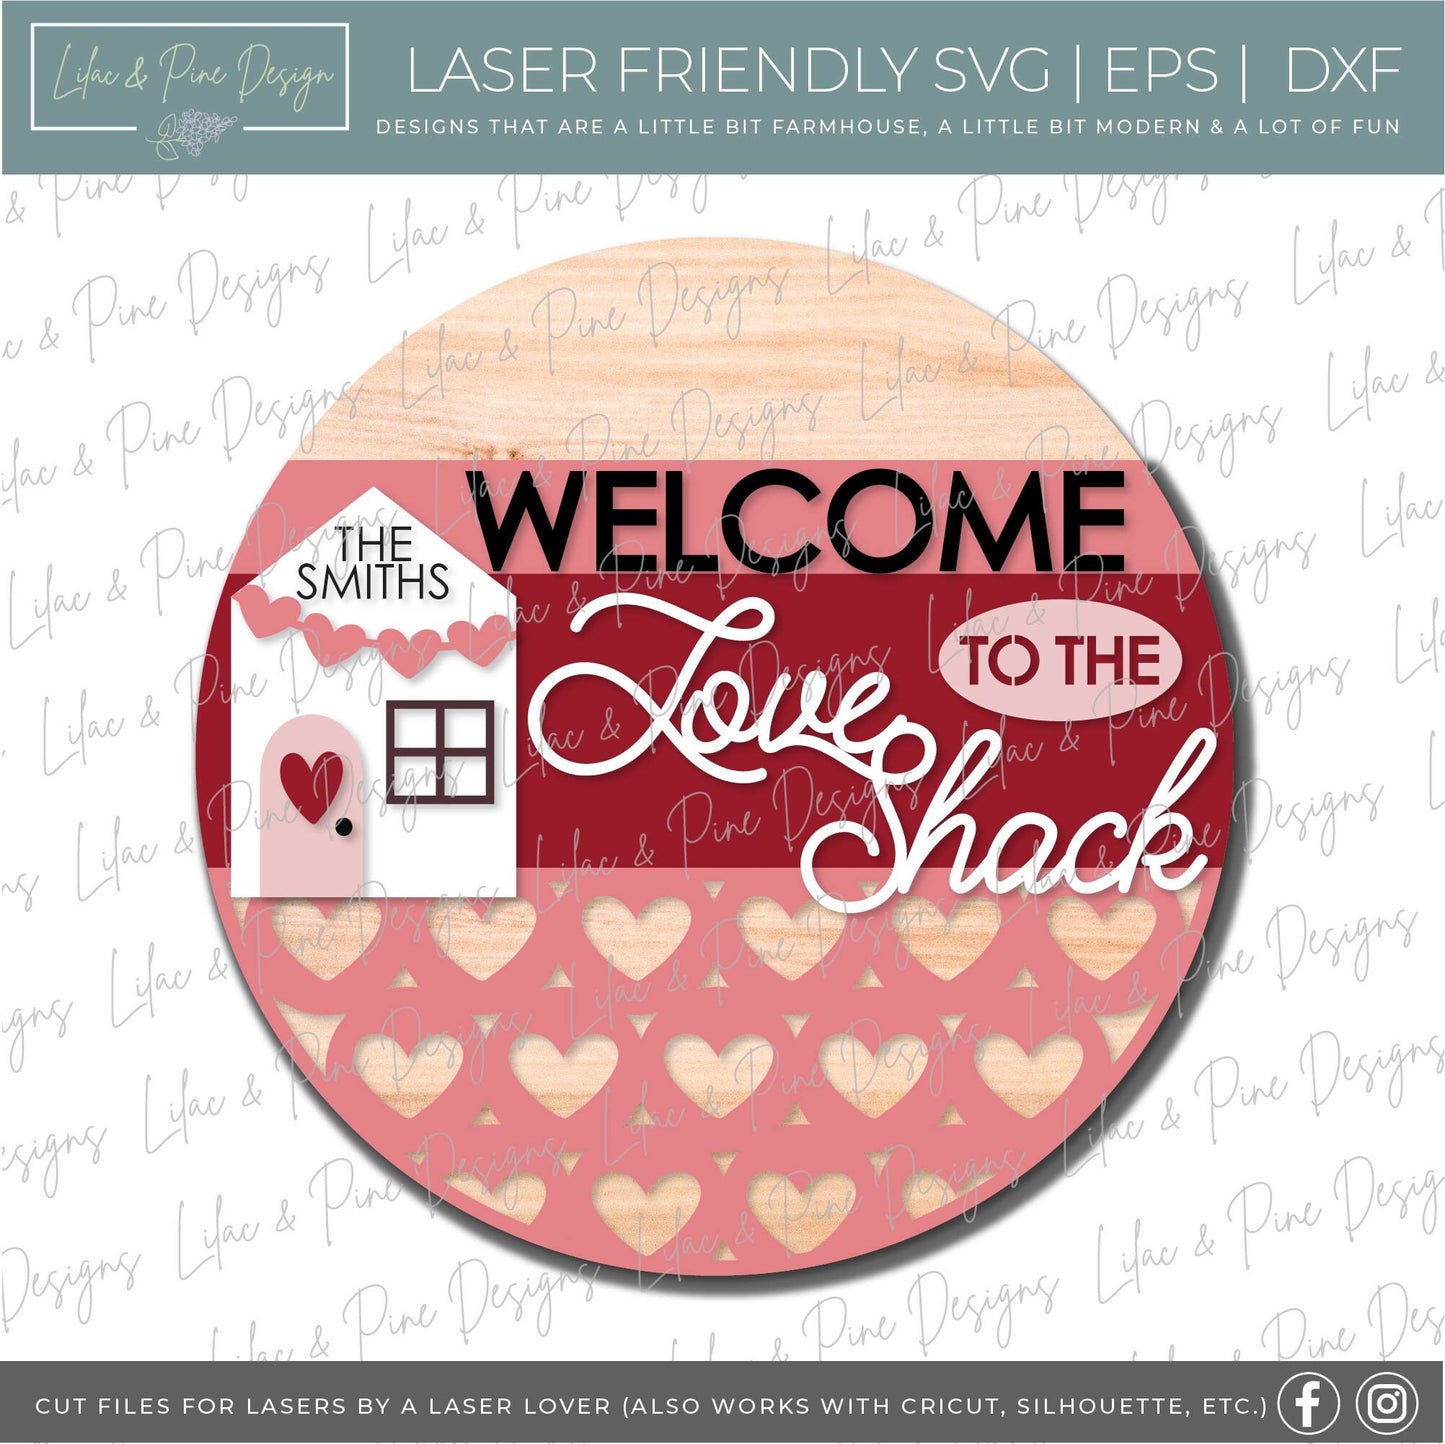 Valentines door hanger bundle, Valentines Day sign bundle SVG, Valentines laser file, hearts SVG, Glowforge files, laser cut file